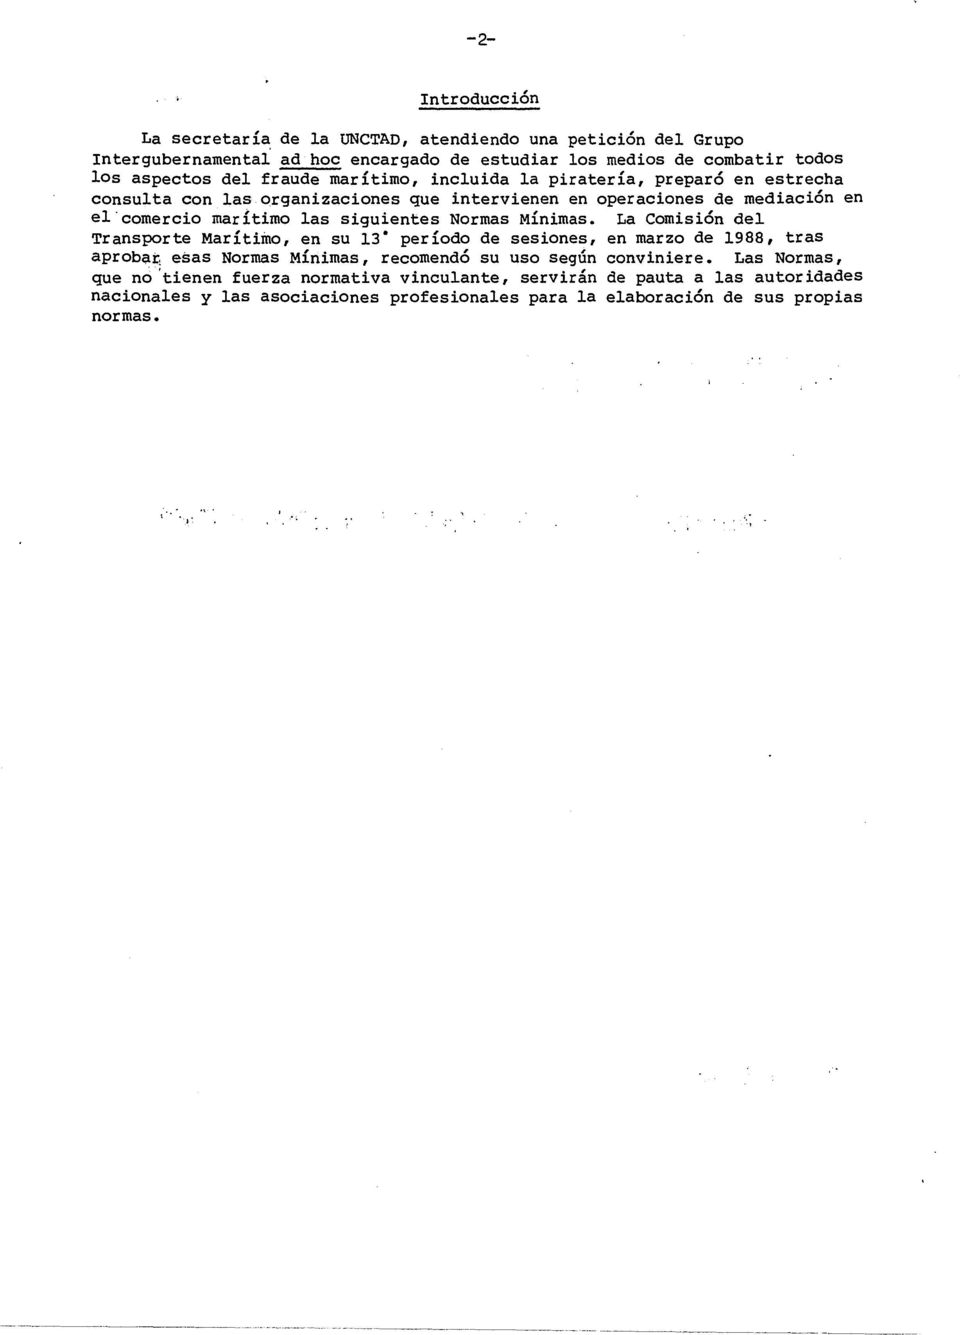 Normas Mínimas. La Comisión del Transporte Marítimo, en su 13" período de sesiones, en marzo de 1988, tras aproba~ esas Normas Mínimas, recomendó su uso según conviniere.